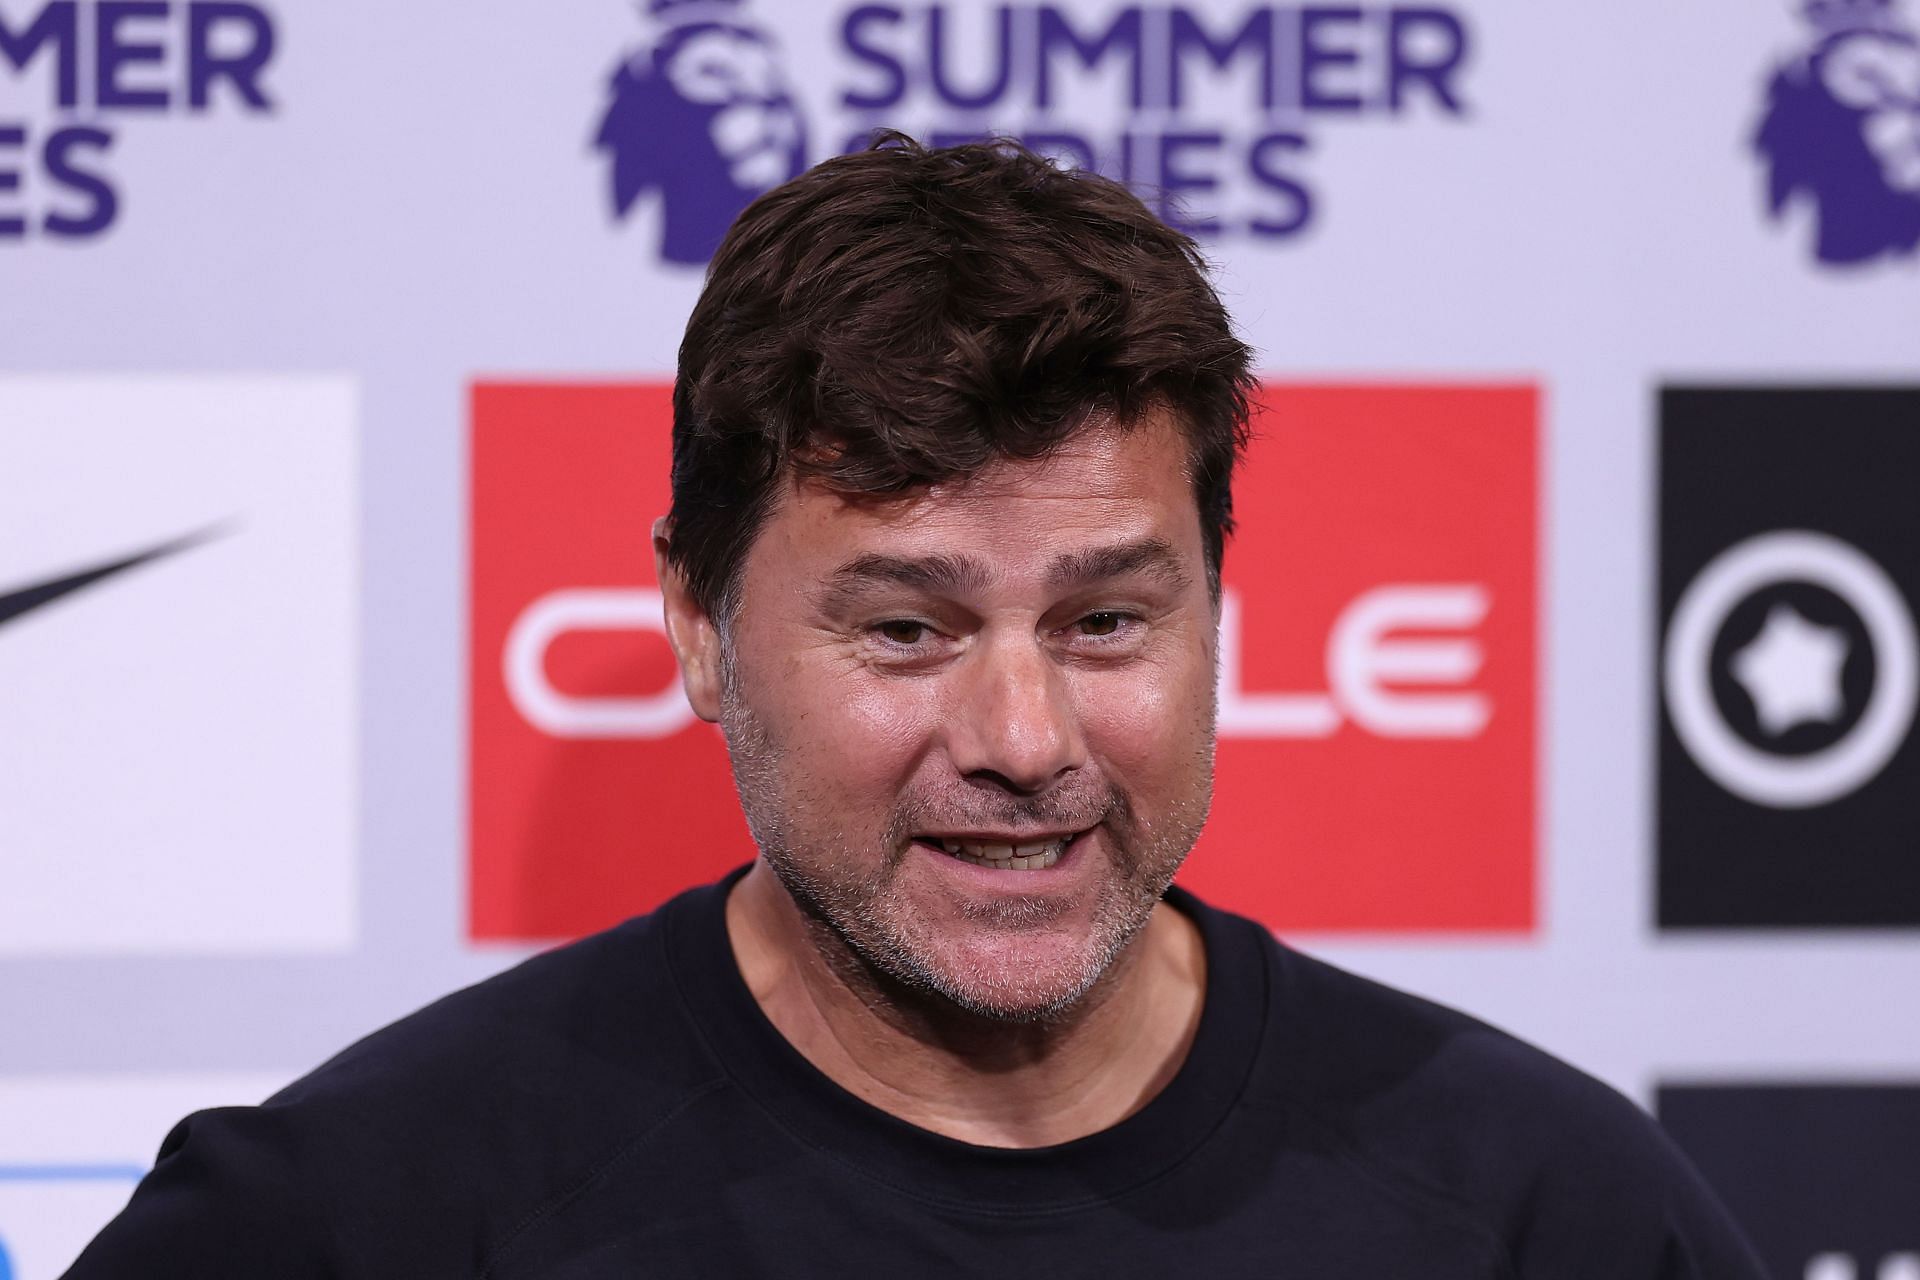 Chelsea Press Conference: Premier League Summer Series